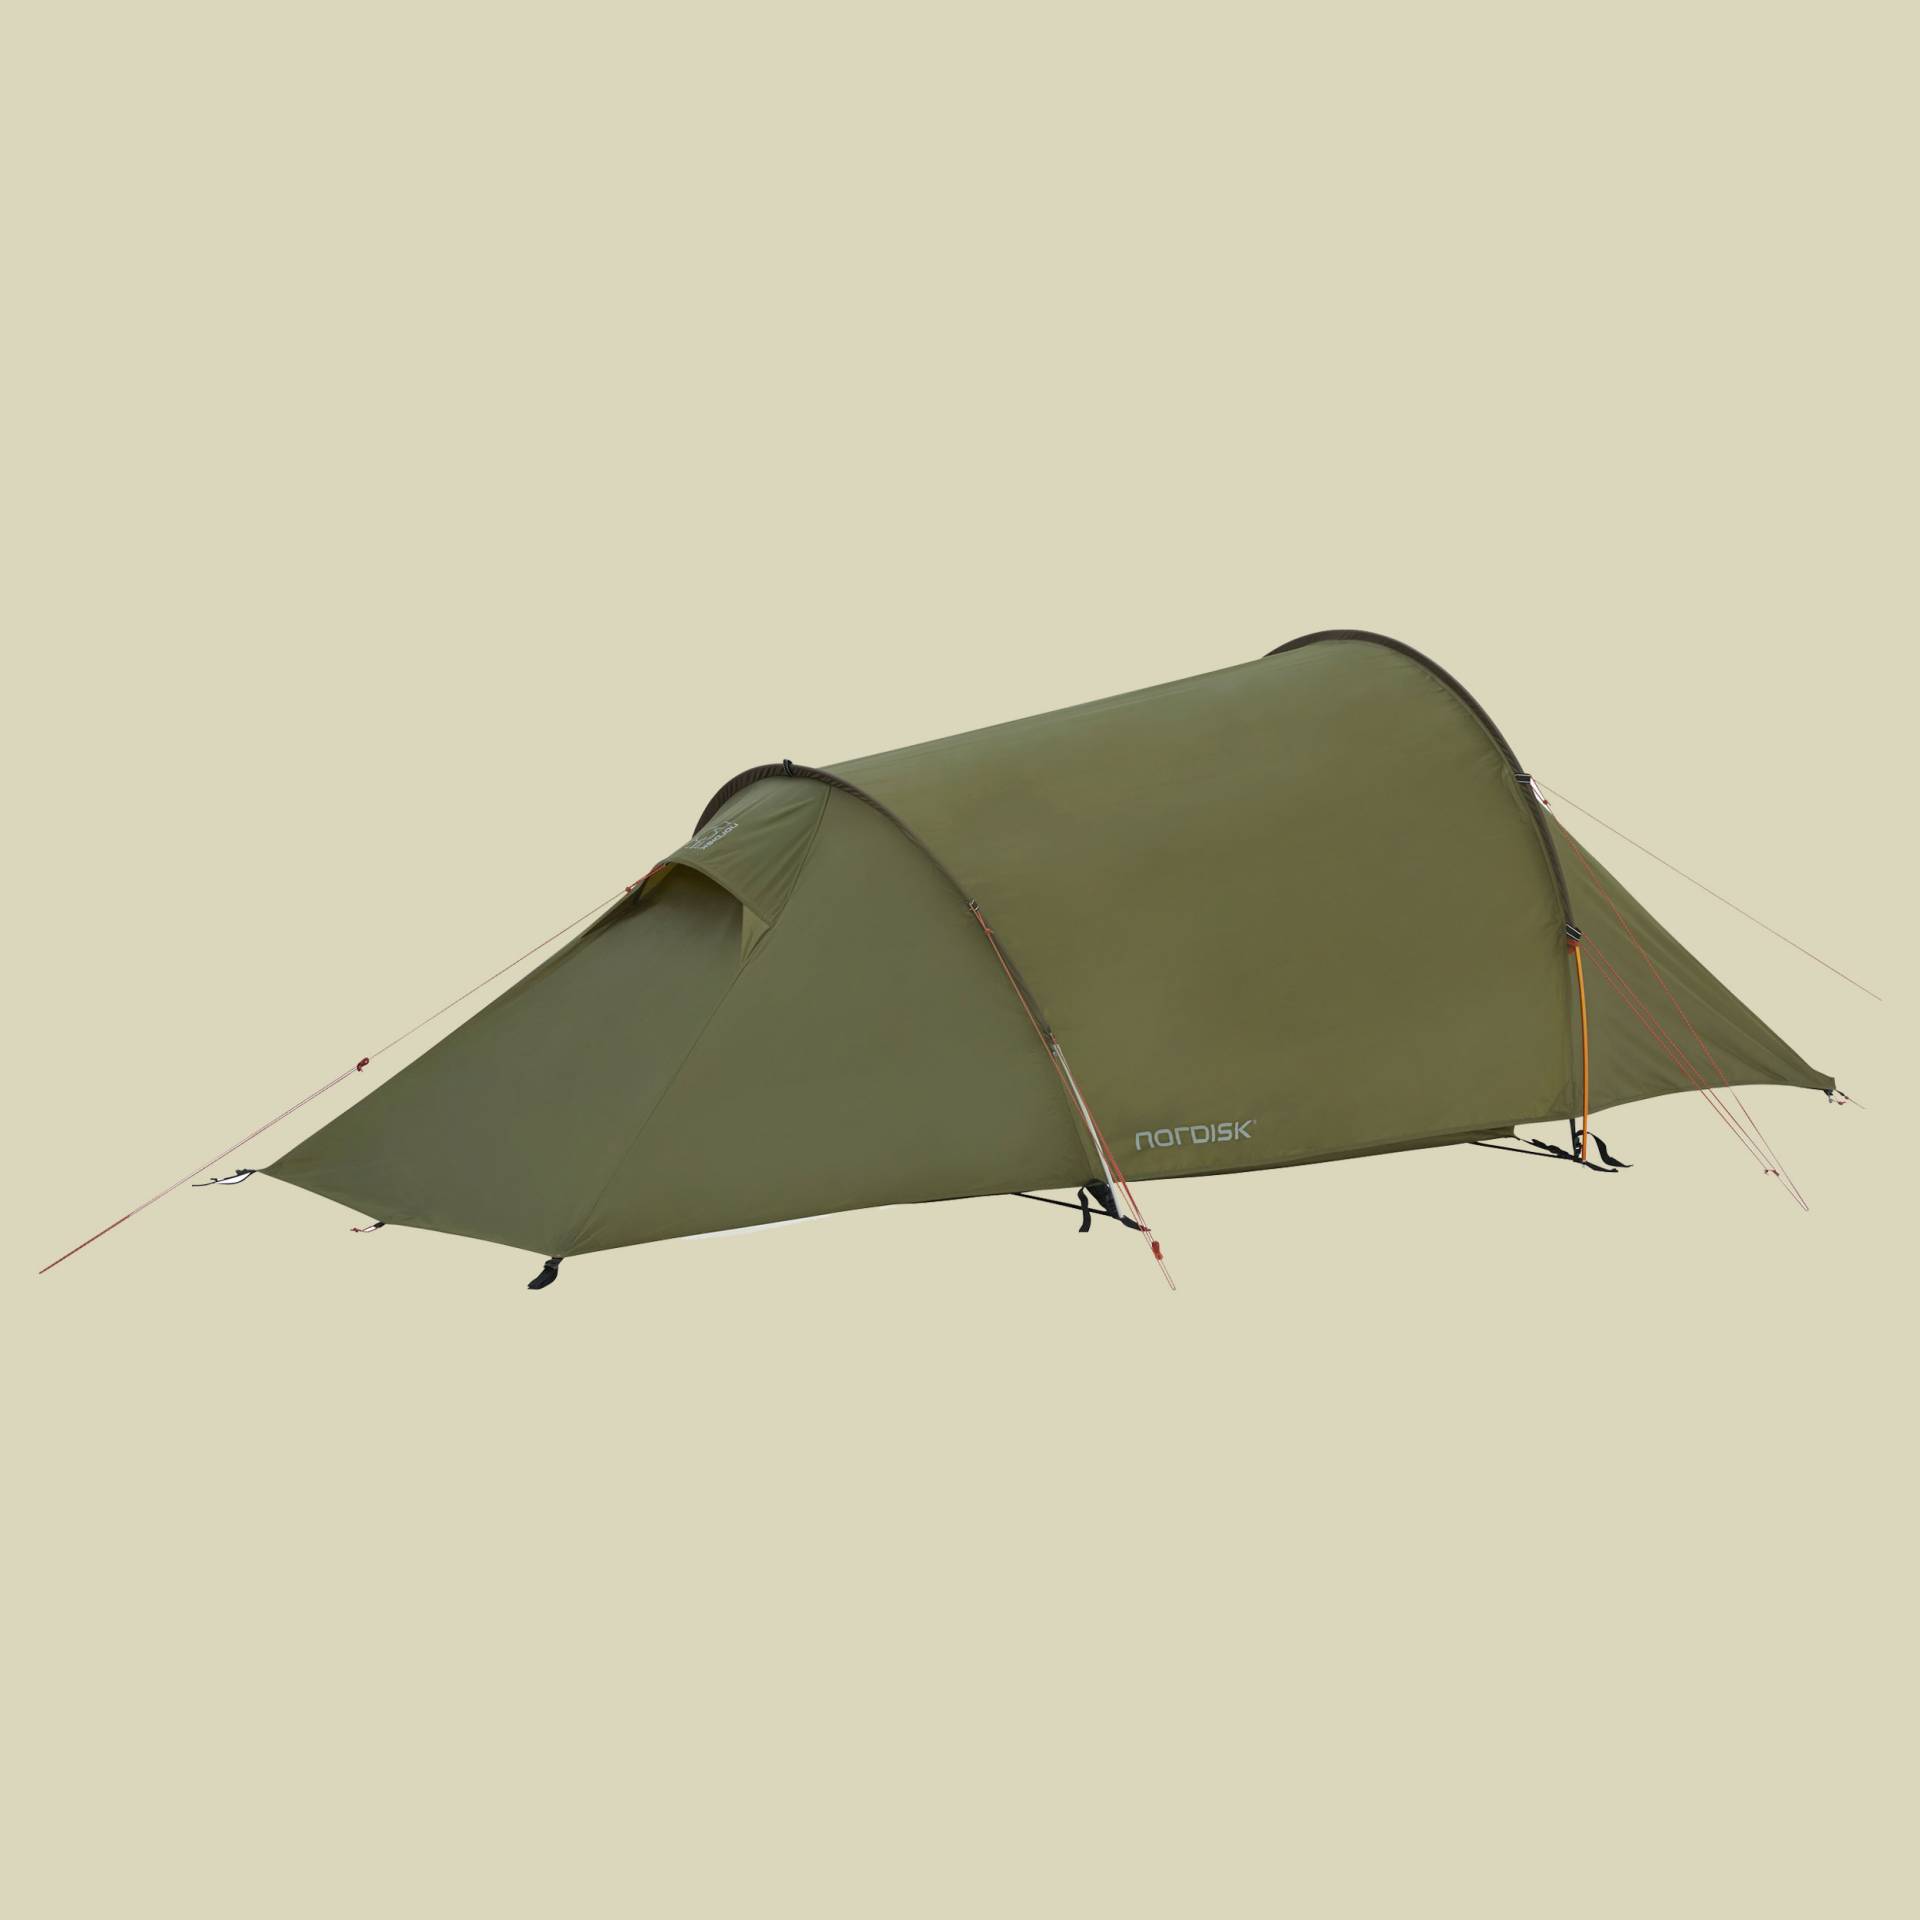 HALLAND 2 PU Tent 2-Personen Zelt Farbe dark olive von Nordisk